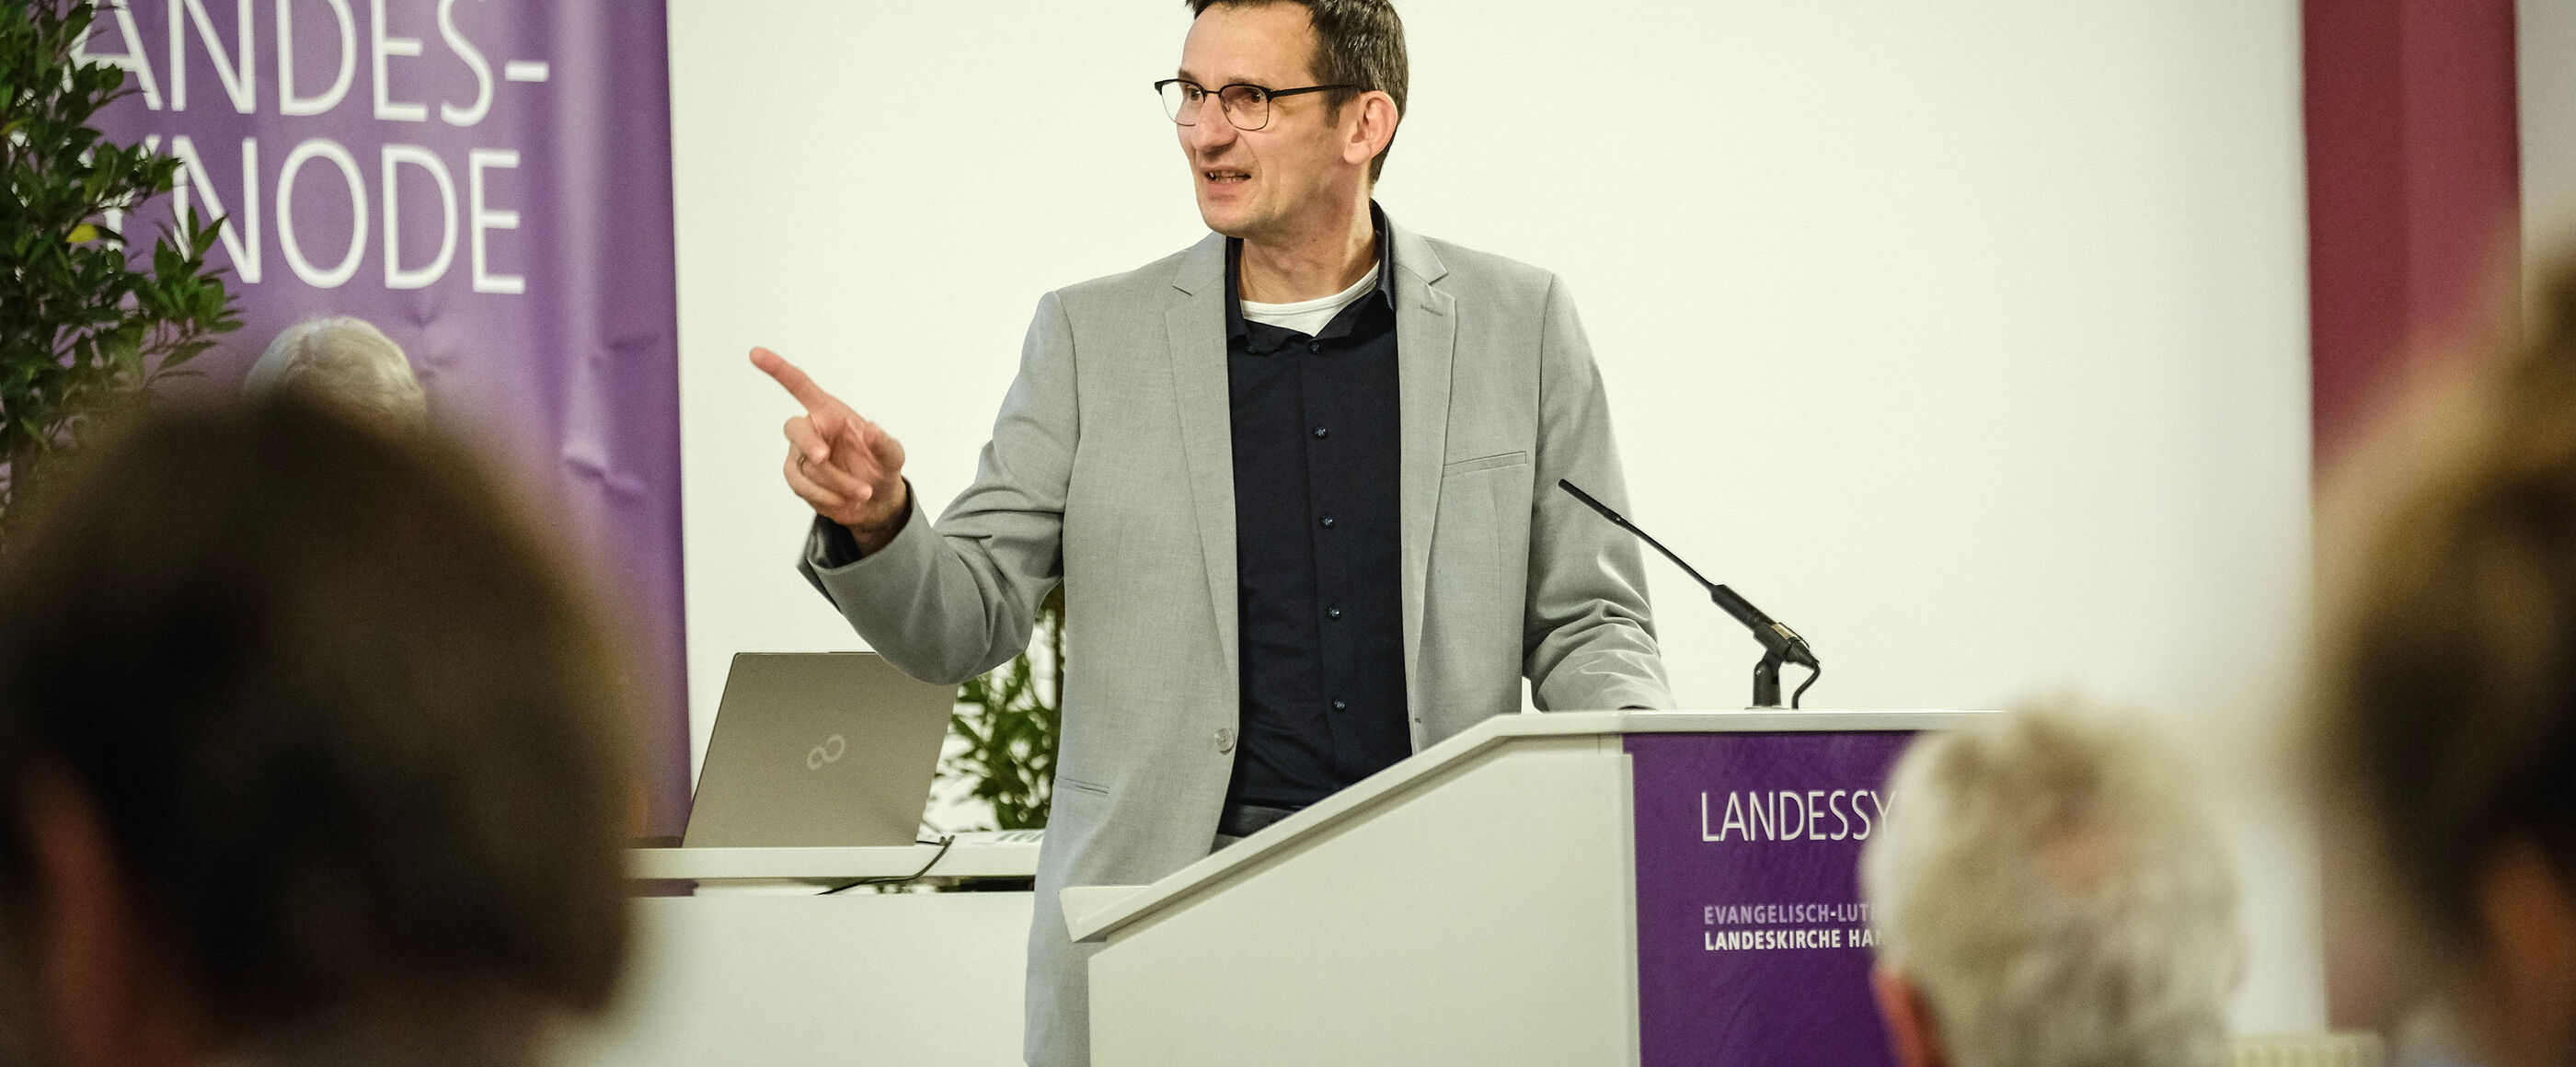 Eine männlich lesbare Person mit Brille und dunklen Haaren steht im Anzug hinter einem Rednerpult und spricht in ein Mikrofon.